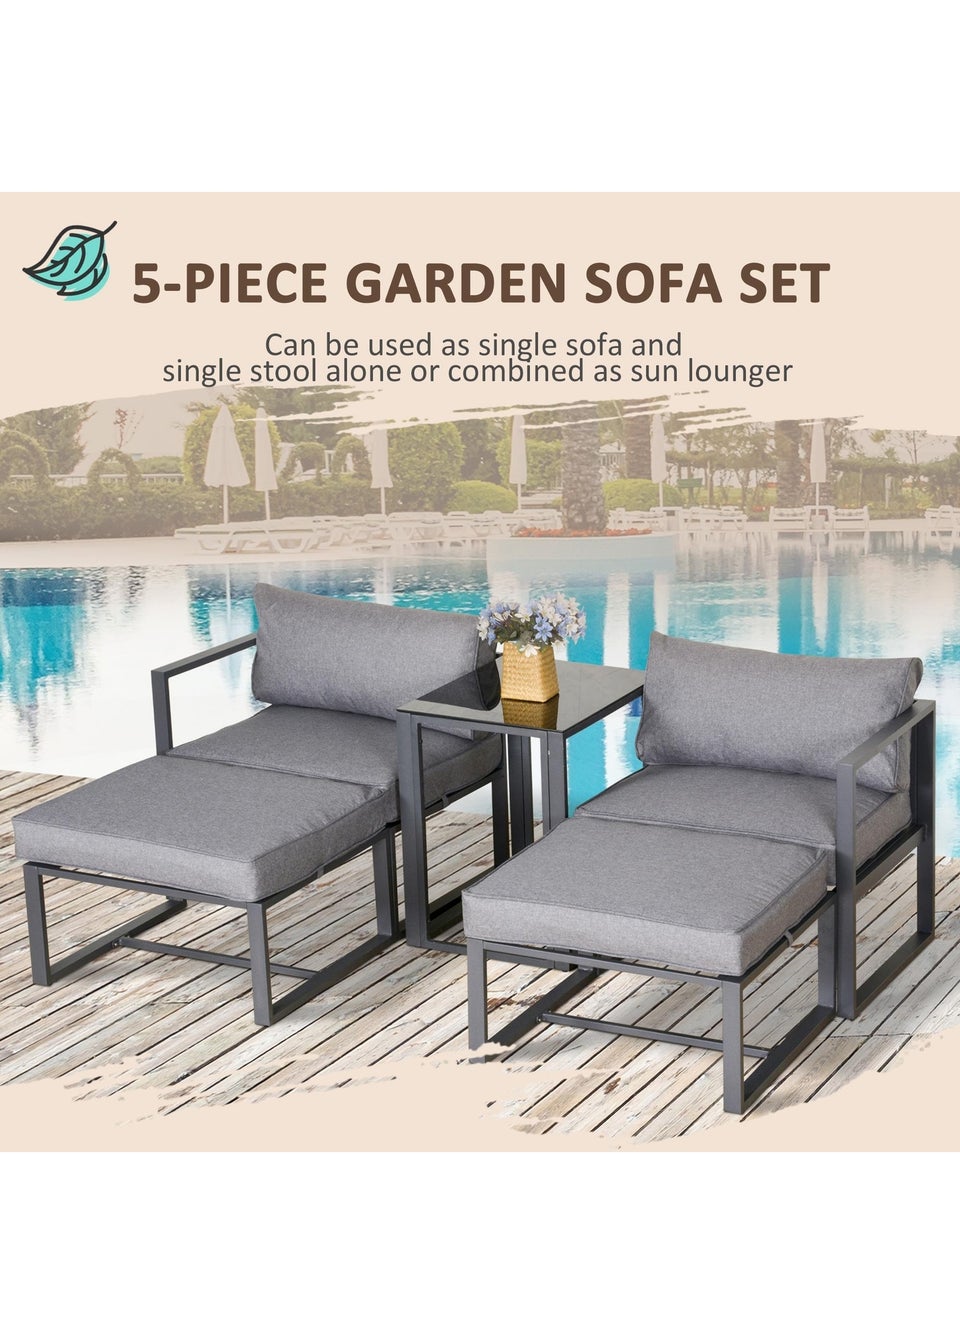 Outsunny 5 Piece Garden Aluminium Conversation Sofa Set